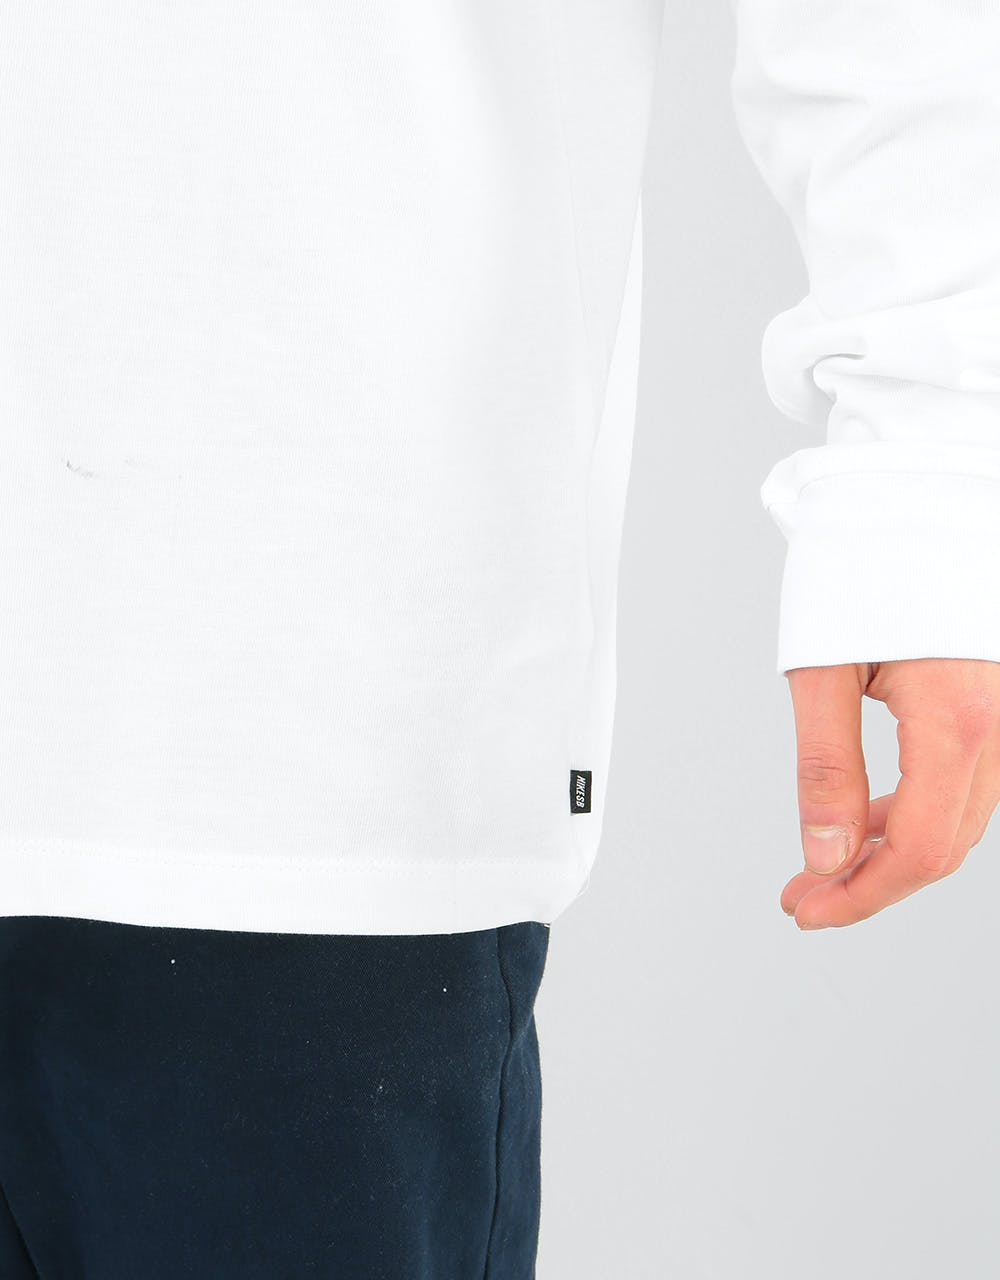 Nike SB Snake L/S T-Shirt - White/Black